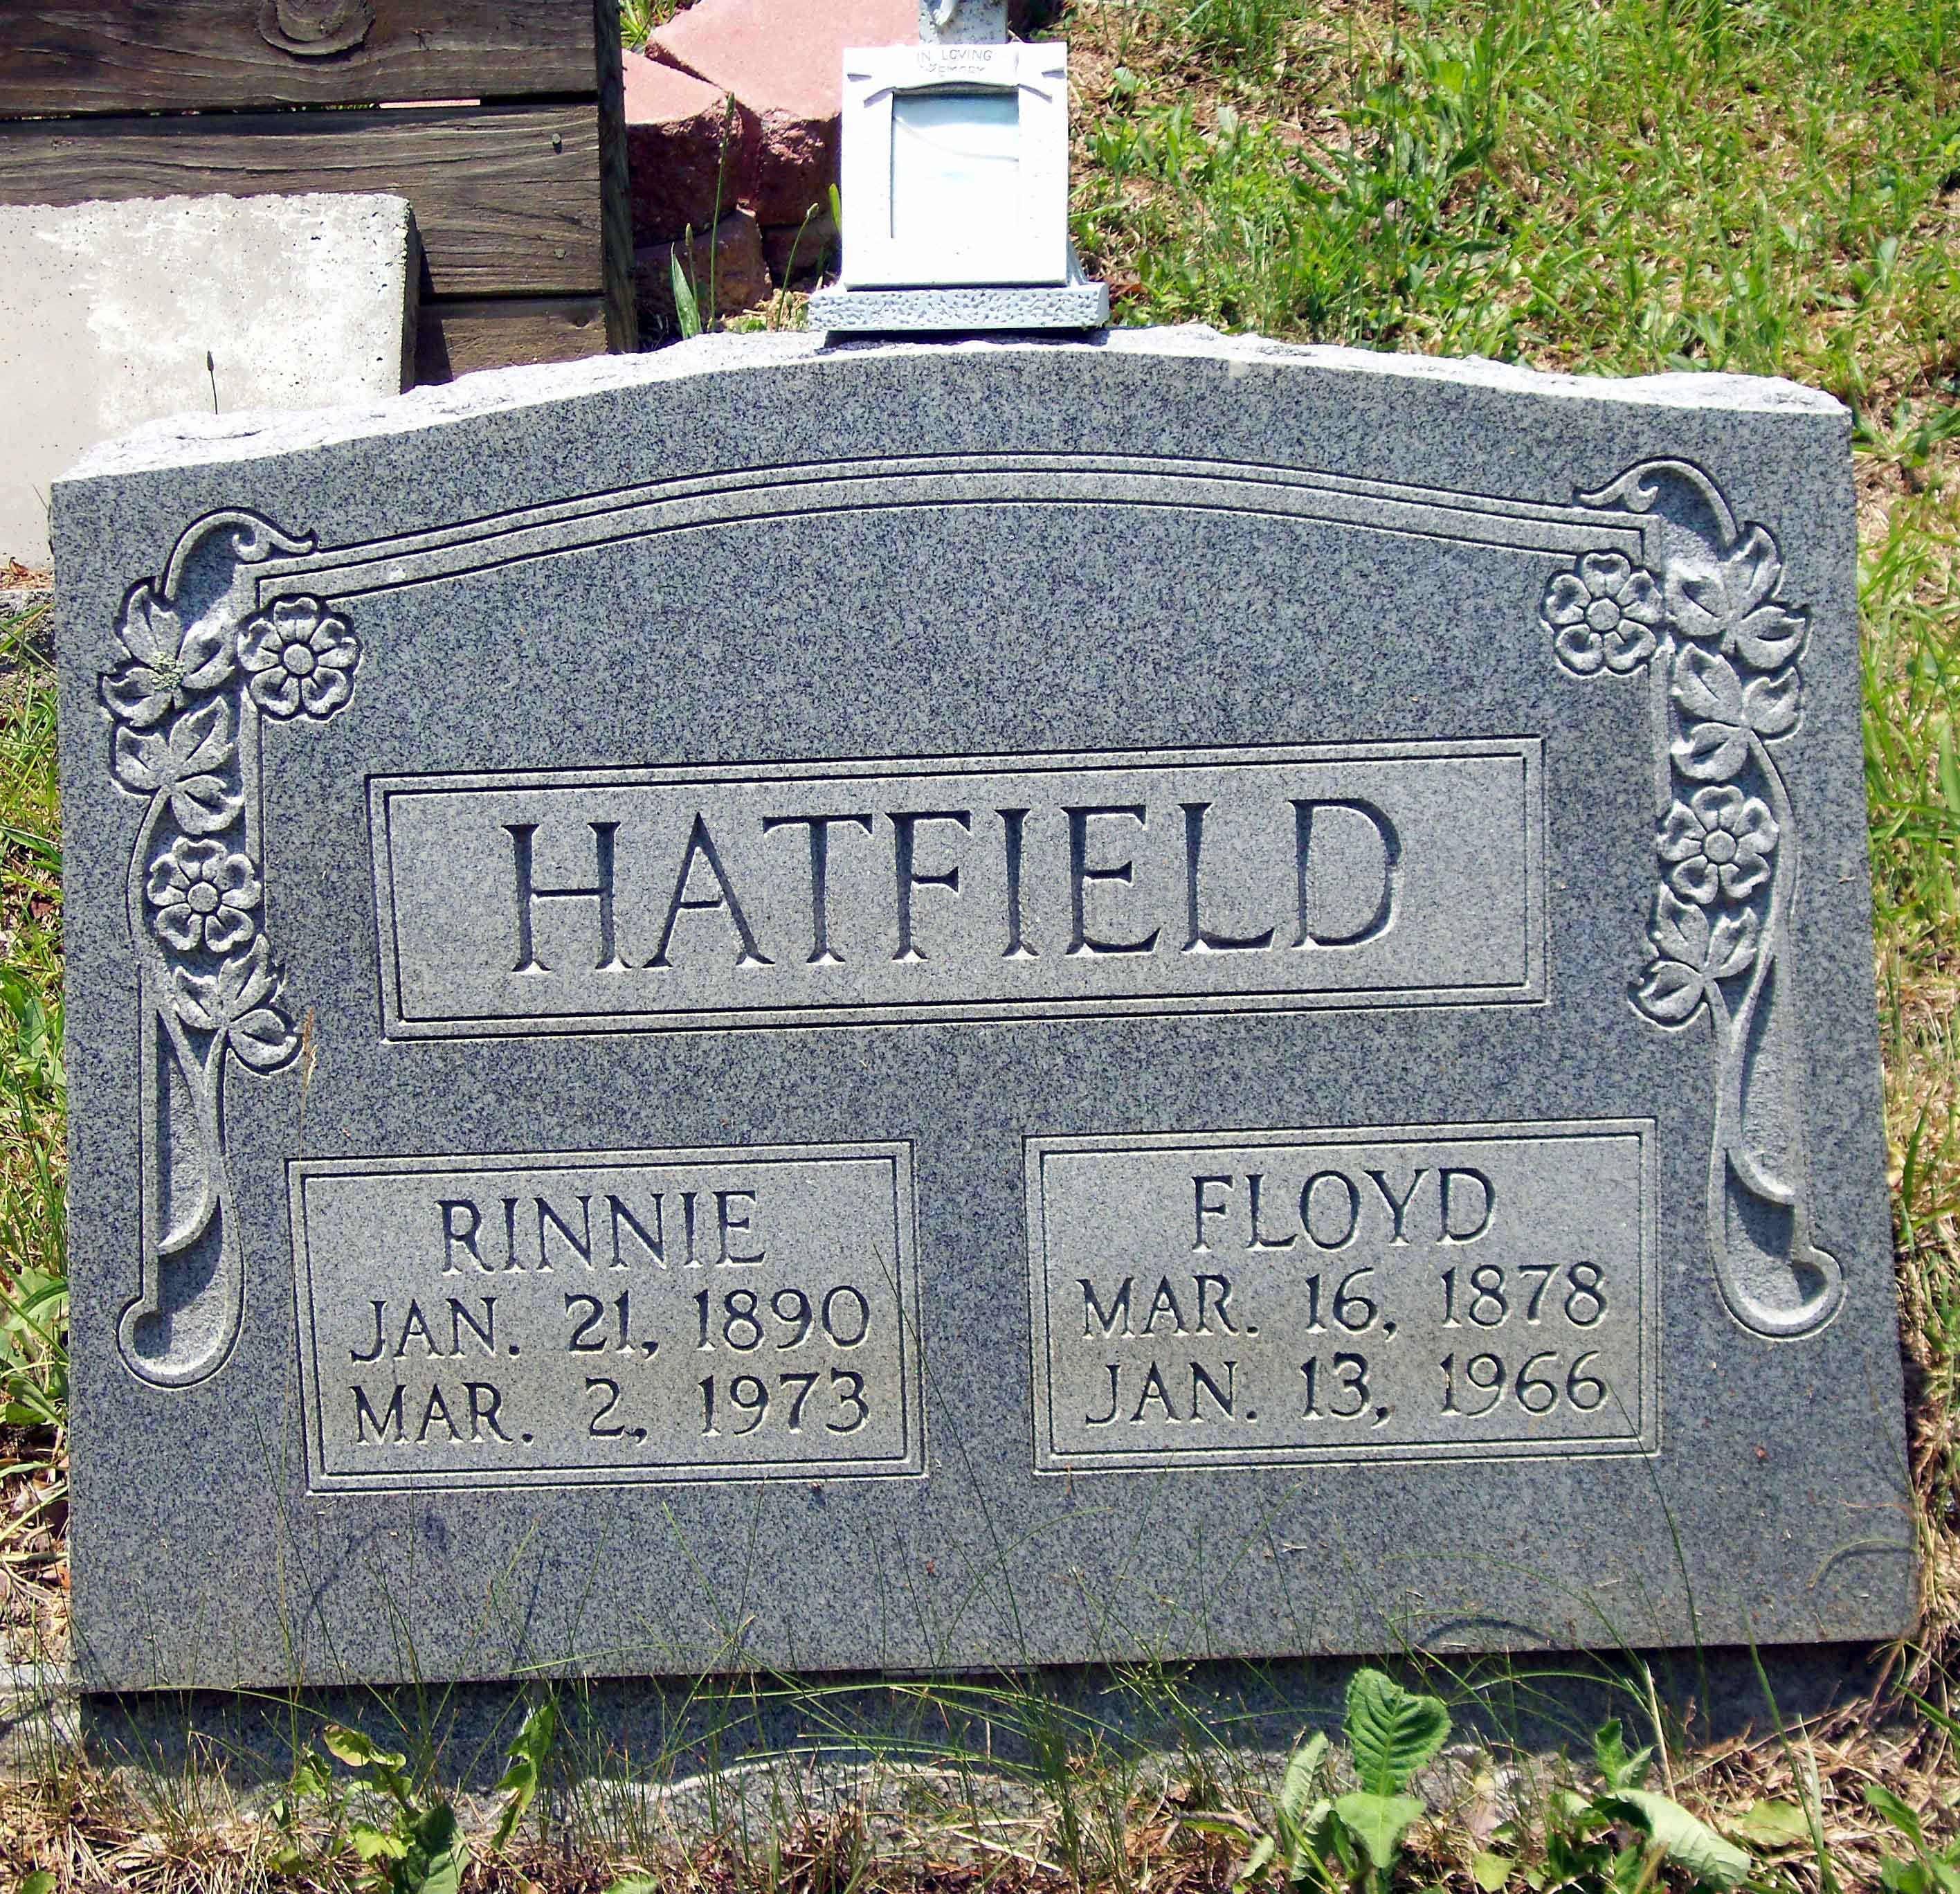 Floyd & Rinnie Toler Hatfield